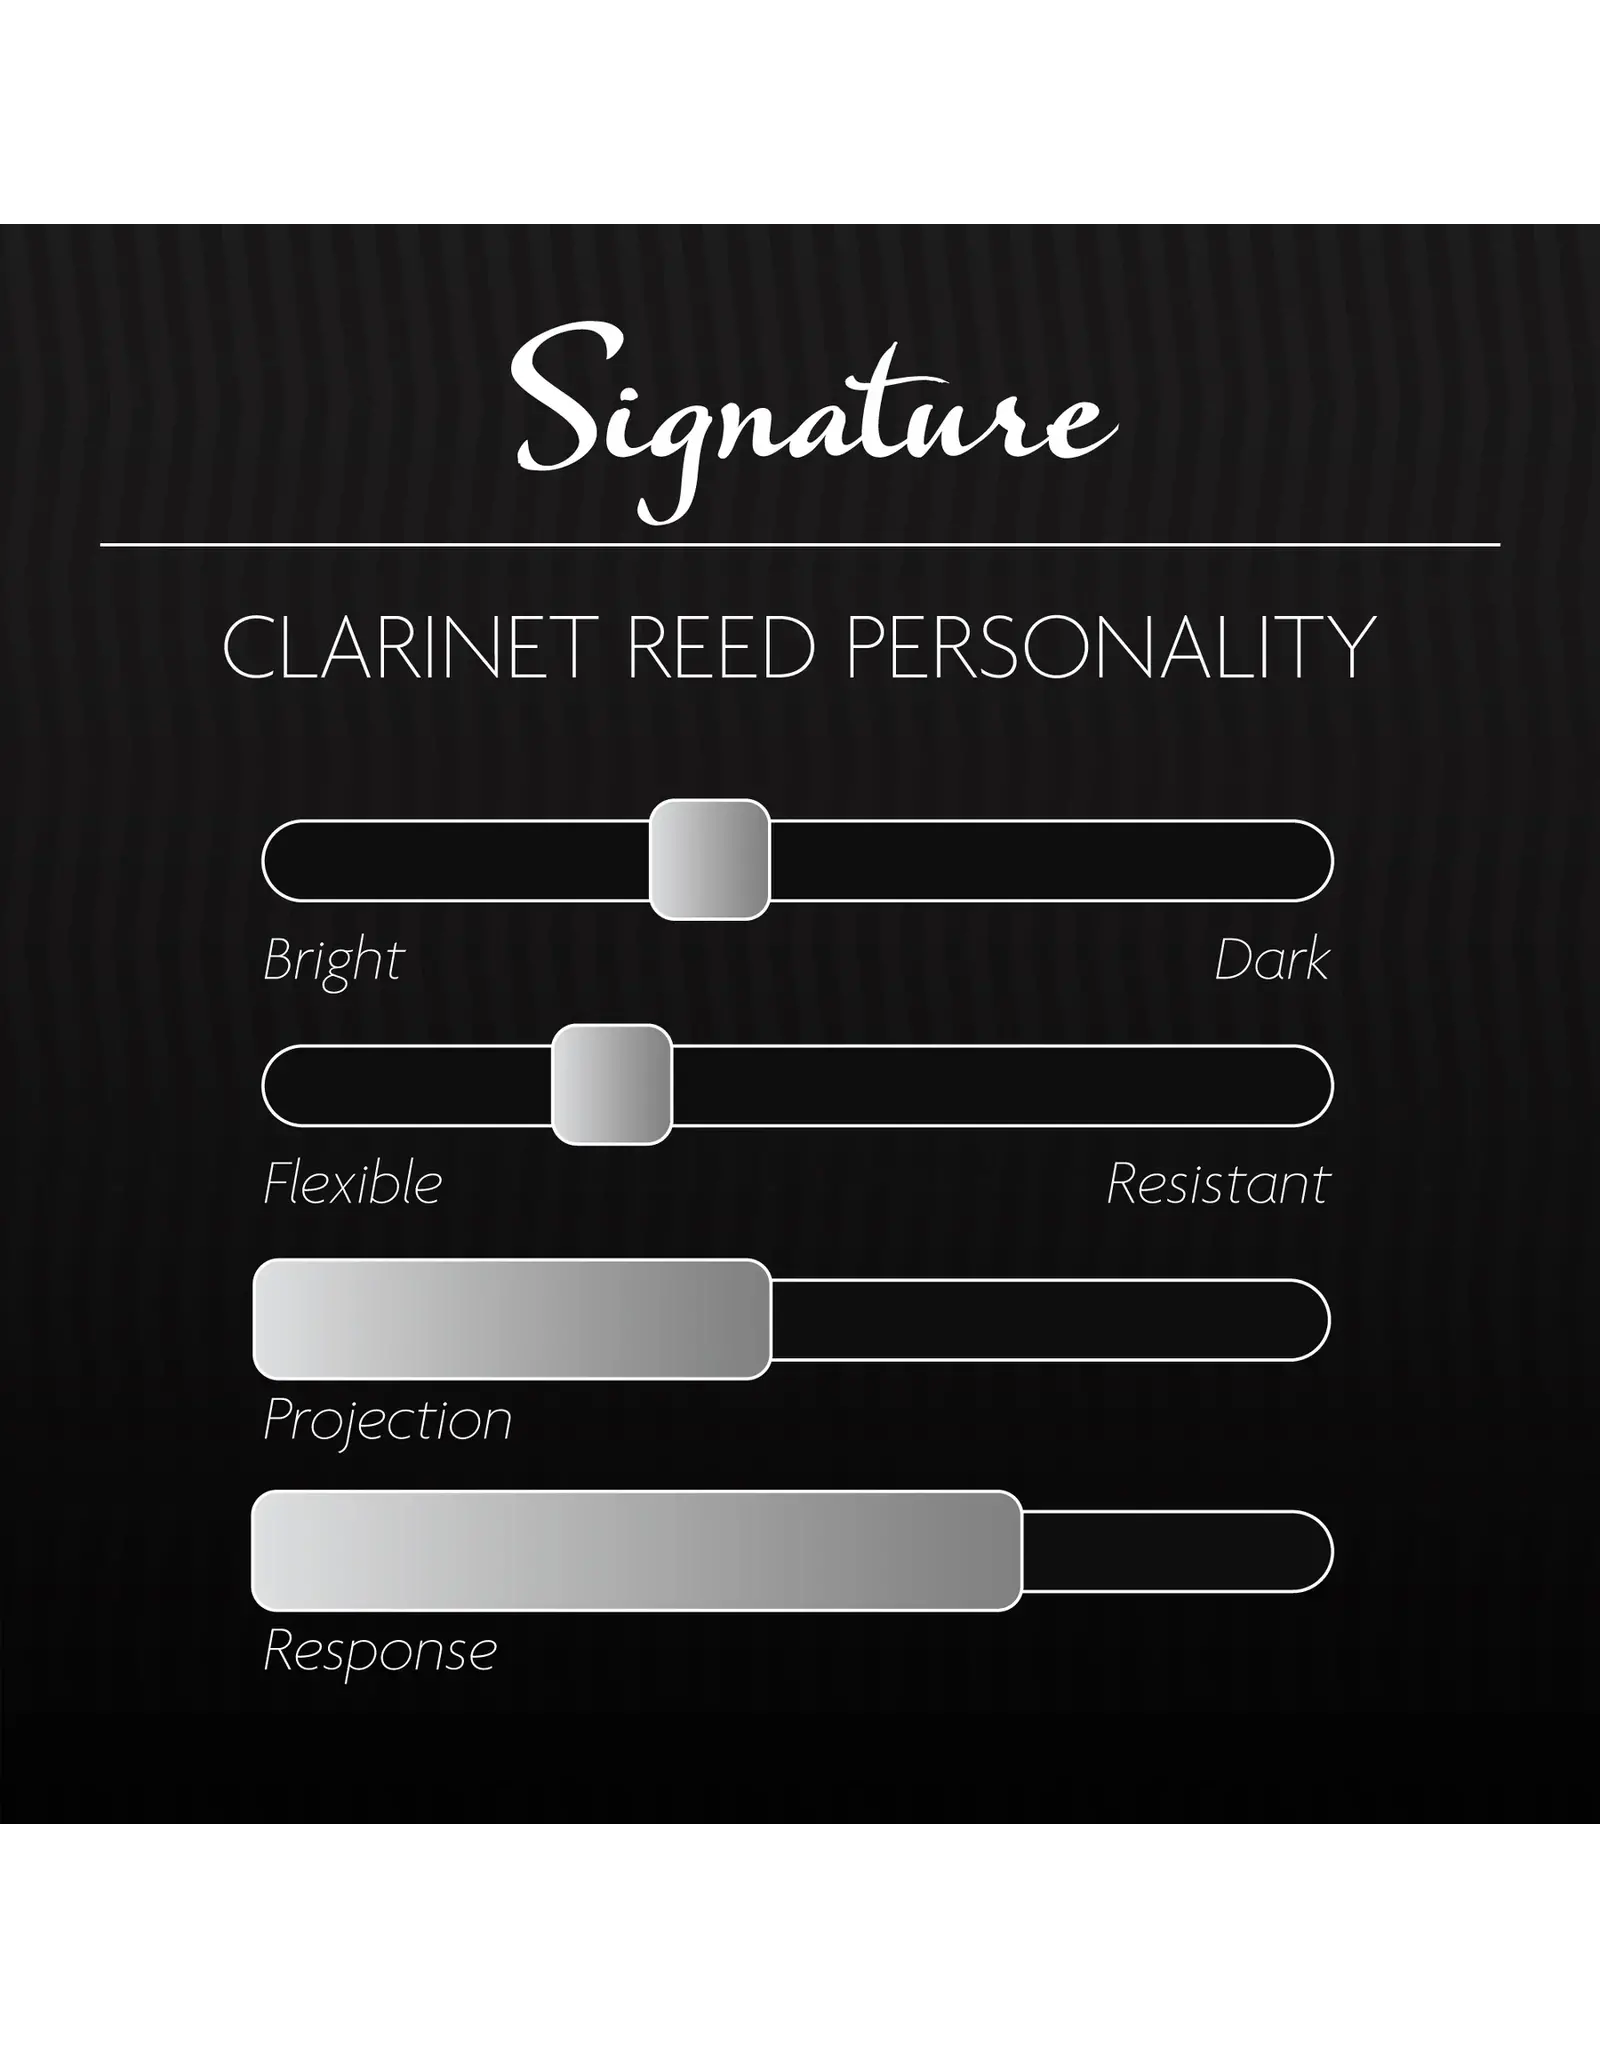 Legere Legere B♭ Soprano Clarinet Signature